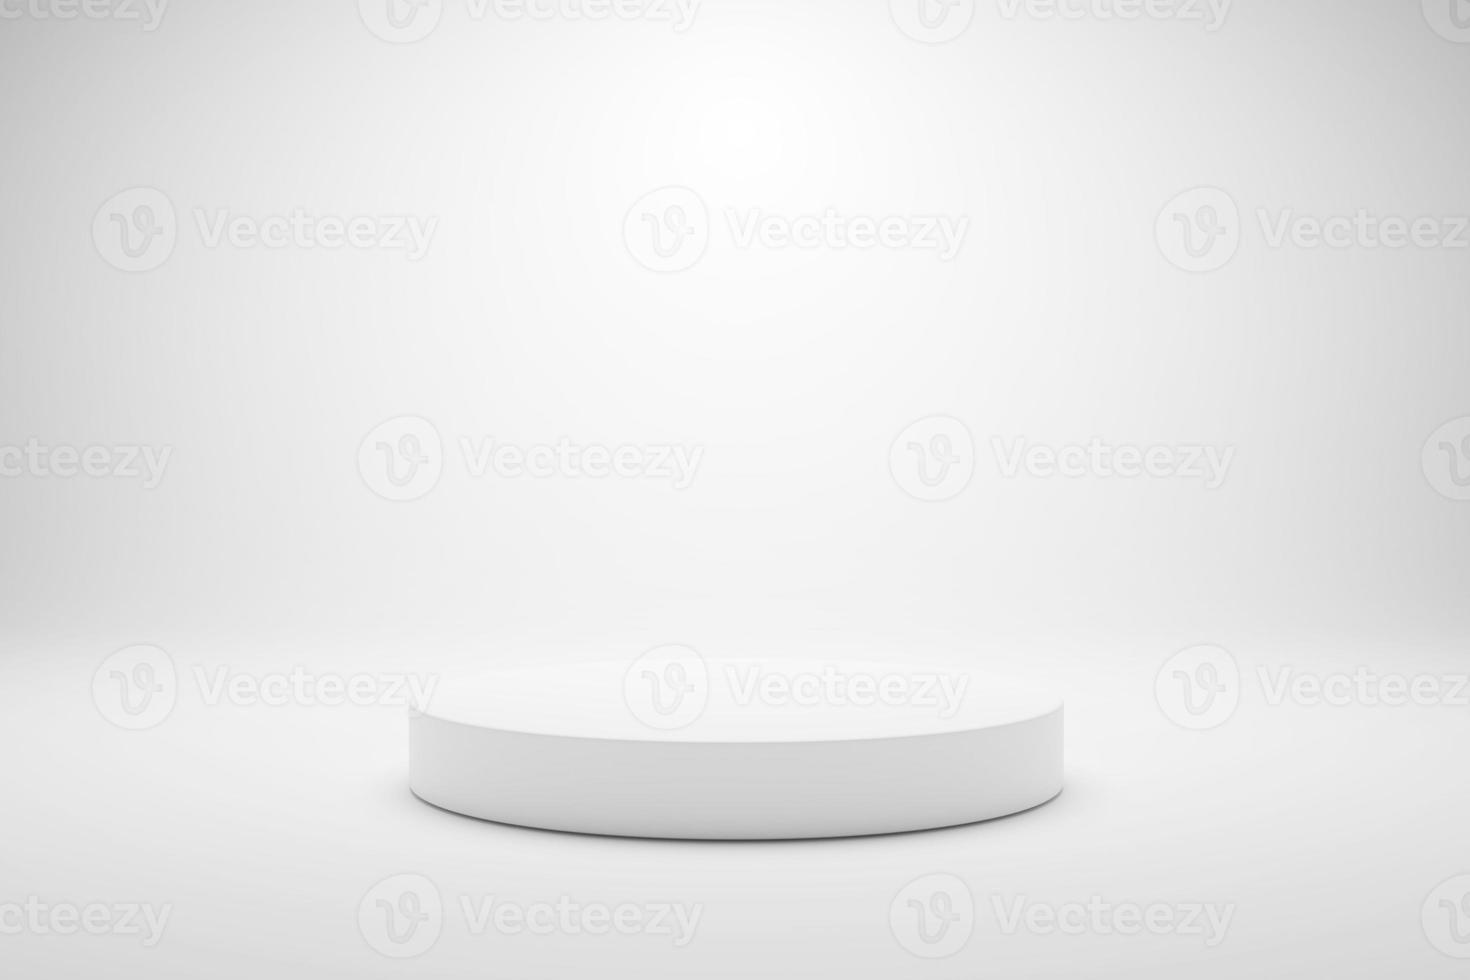 presentación en 3d de producto de pedestal de podio mínimo blanco sobre fondo blanco. Ilustración de maqueta 3d foto